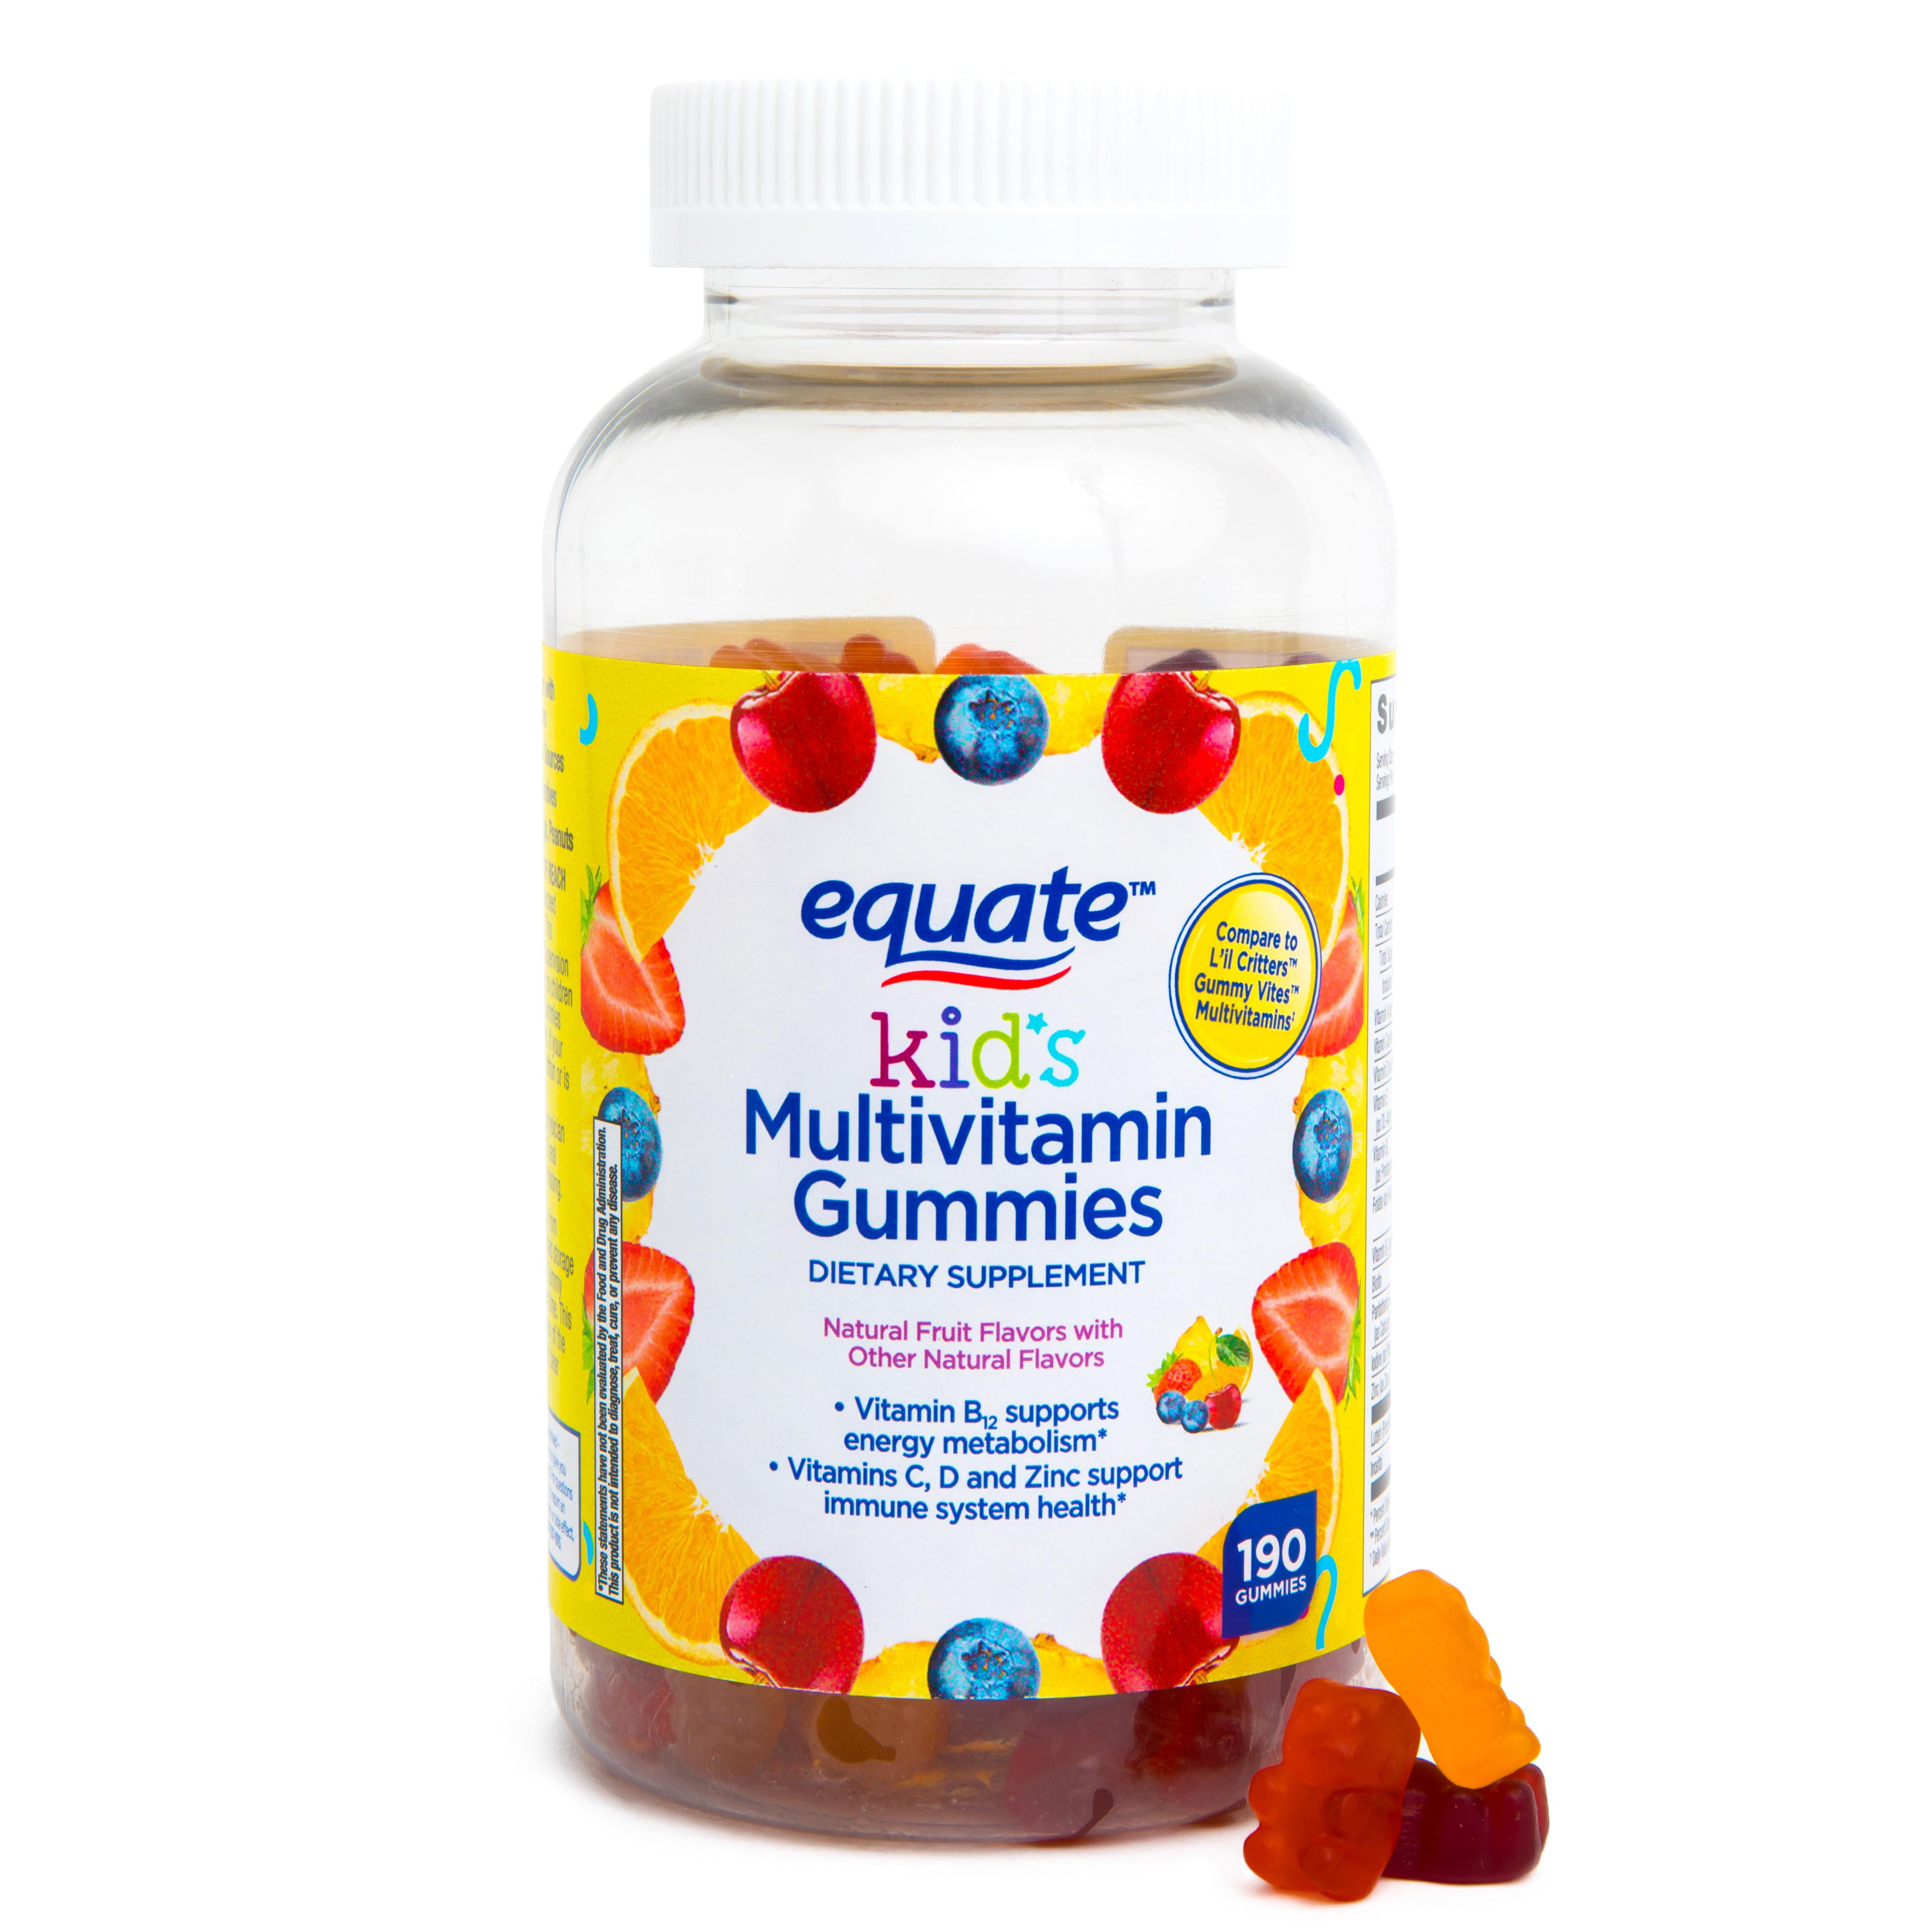 gummy vitamins have porcine gelatin